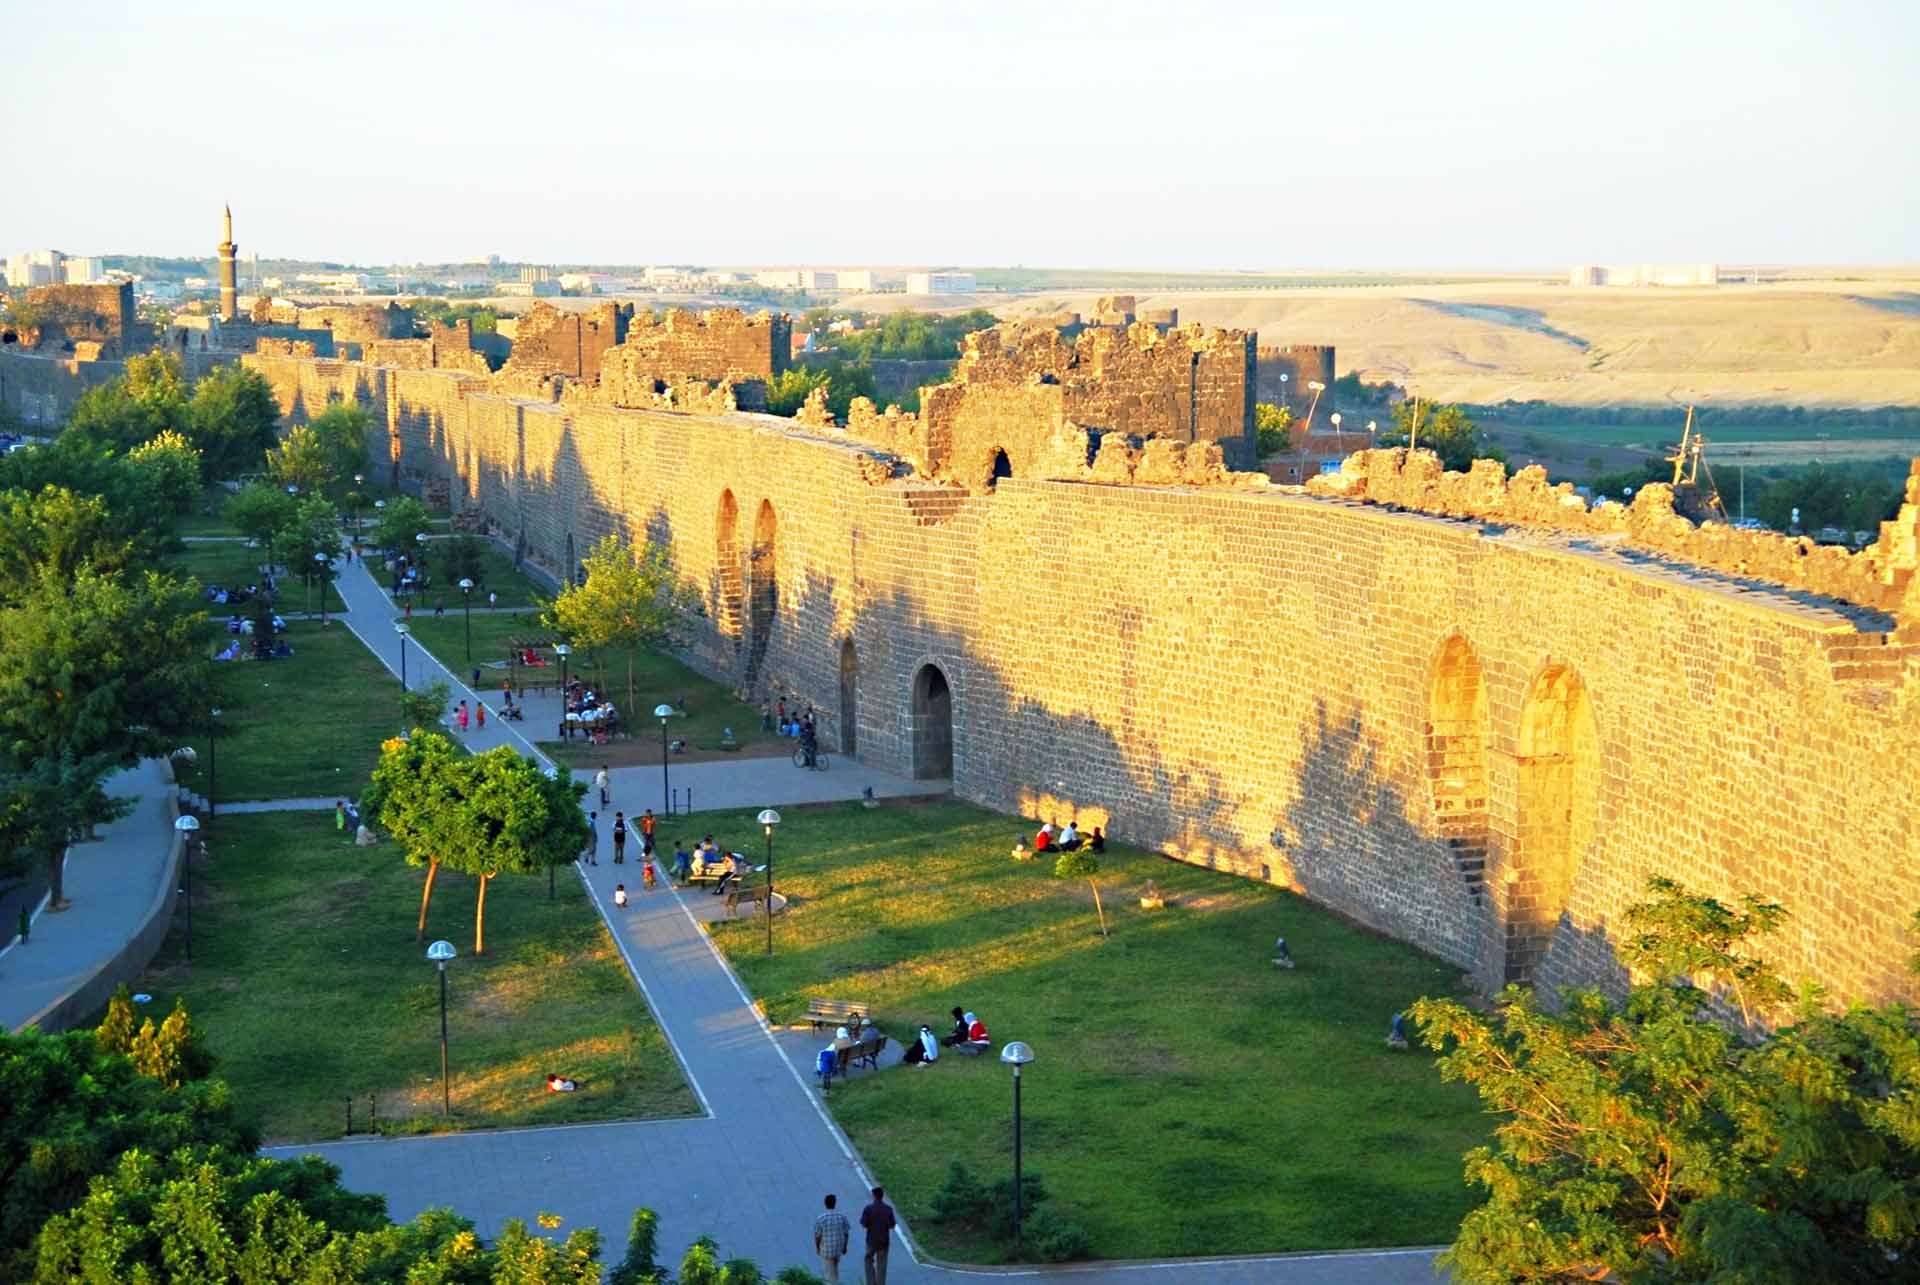 Chiêm ngưỡng vẻ kỳ vĩ của Diyarbakir - Tường thành dài thứ 2 thế giới bị ảnh hưởng bởi động đất tại Thổ Nhĩ Kỳ - Ảnh 1.